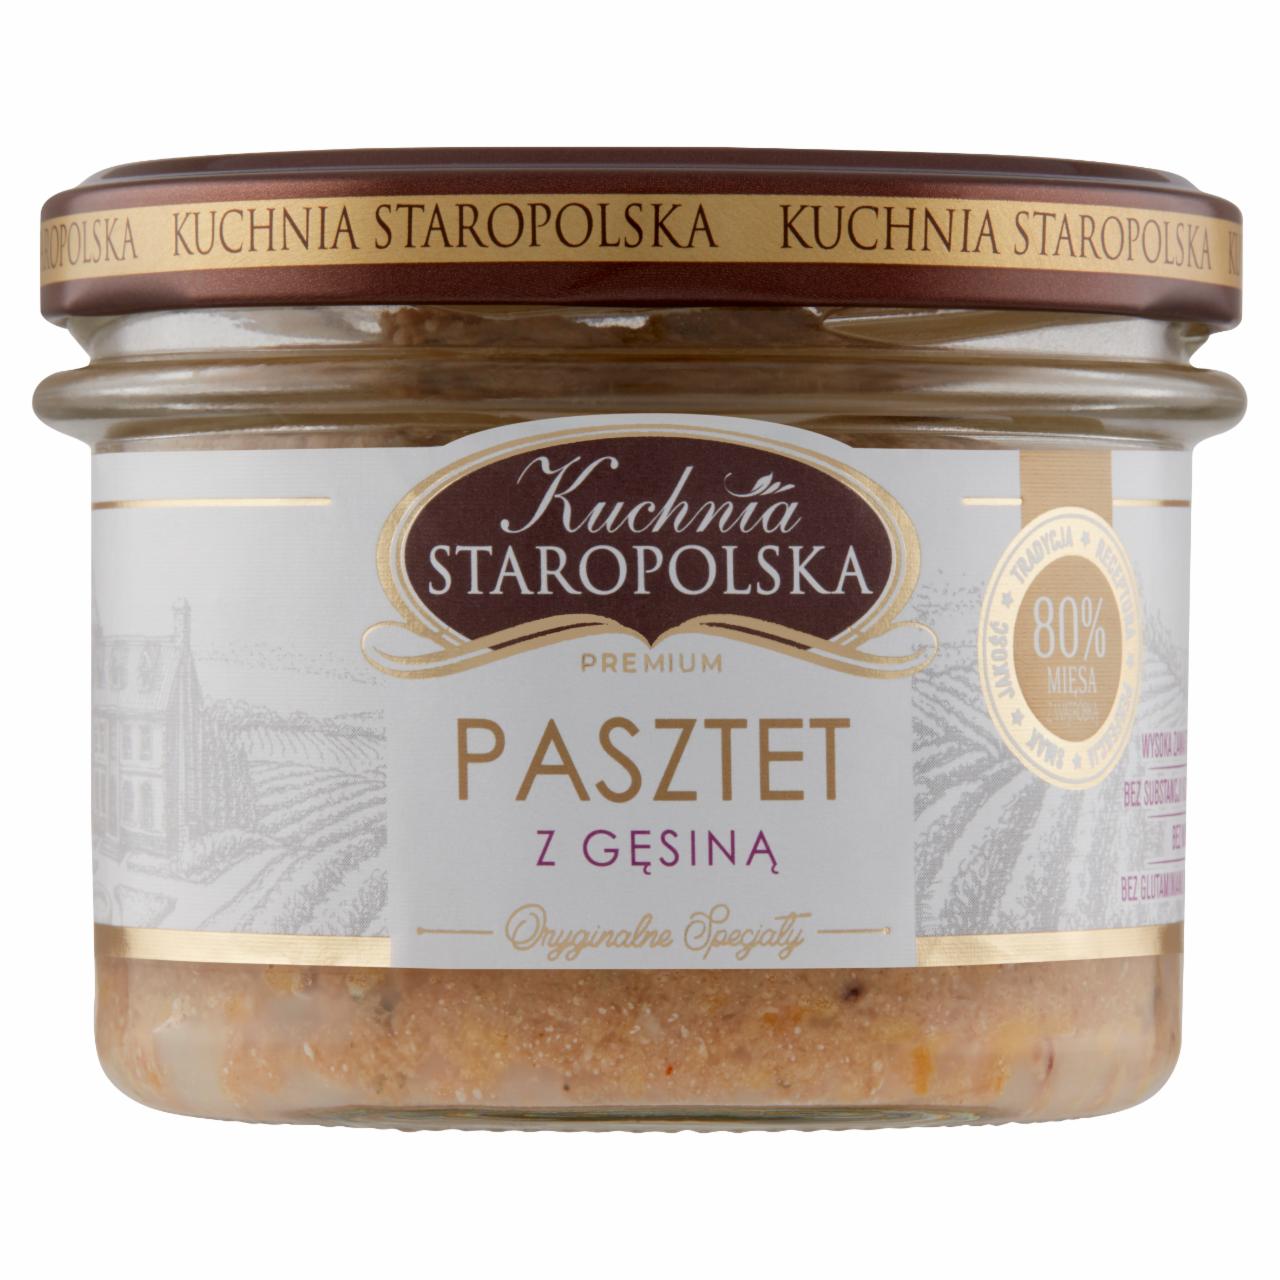 Zdjęcia - Kuchnia Staropolska Premium Pasztet z gęsiną 160 g